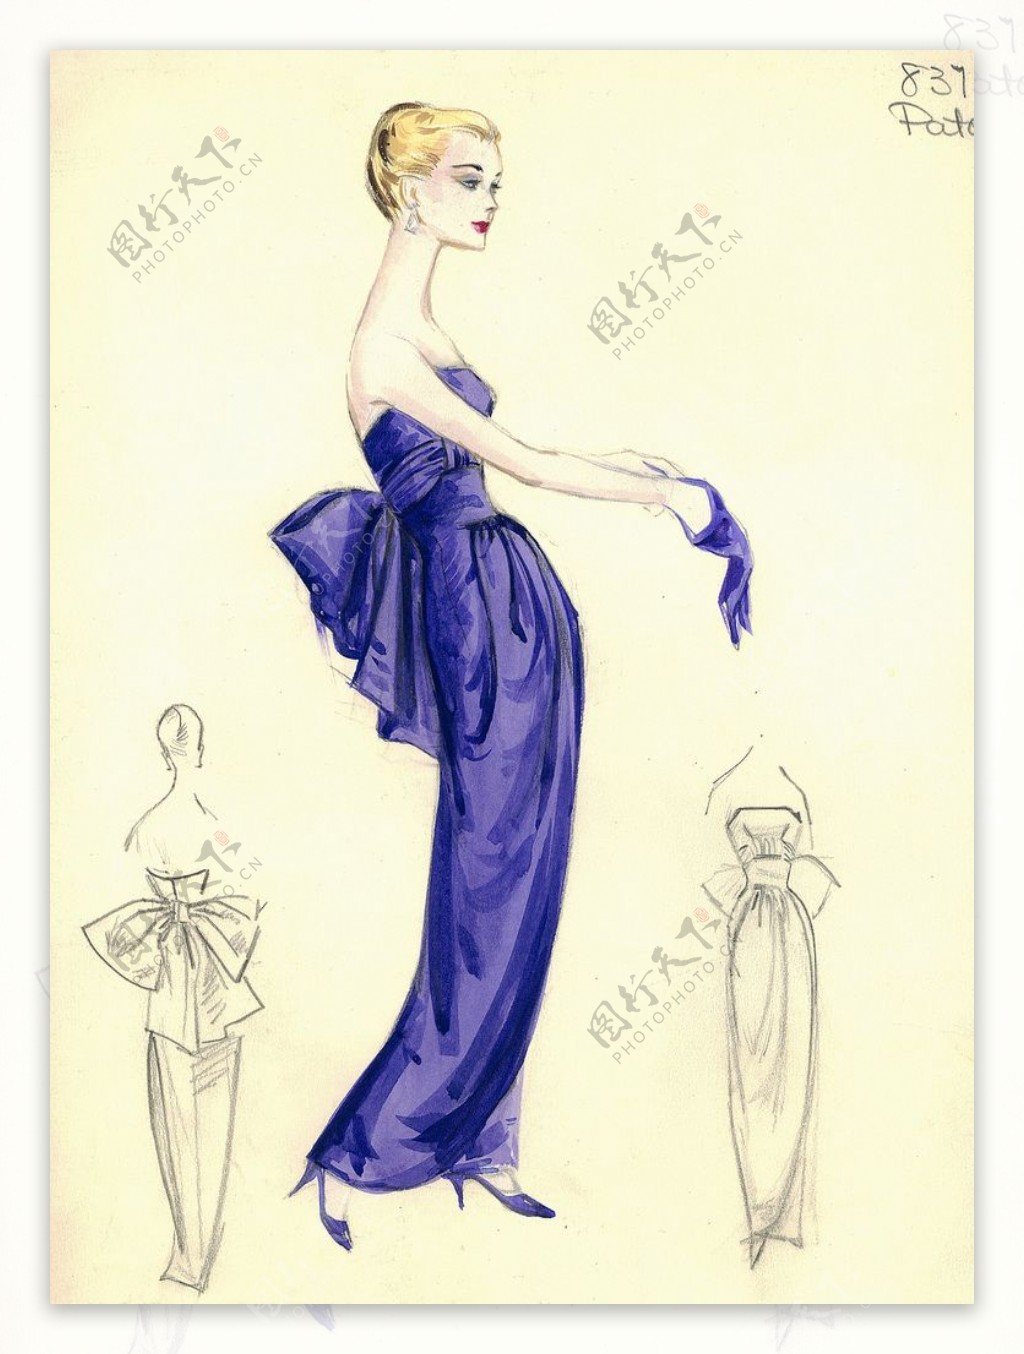 紫色晚礼服设计图